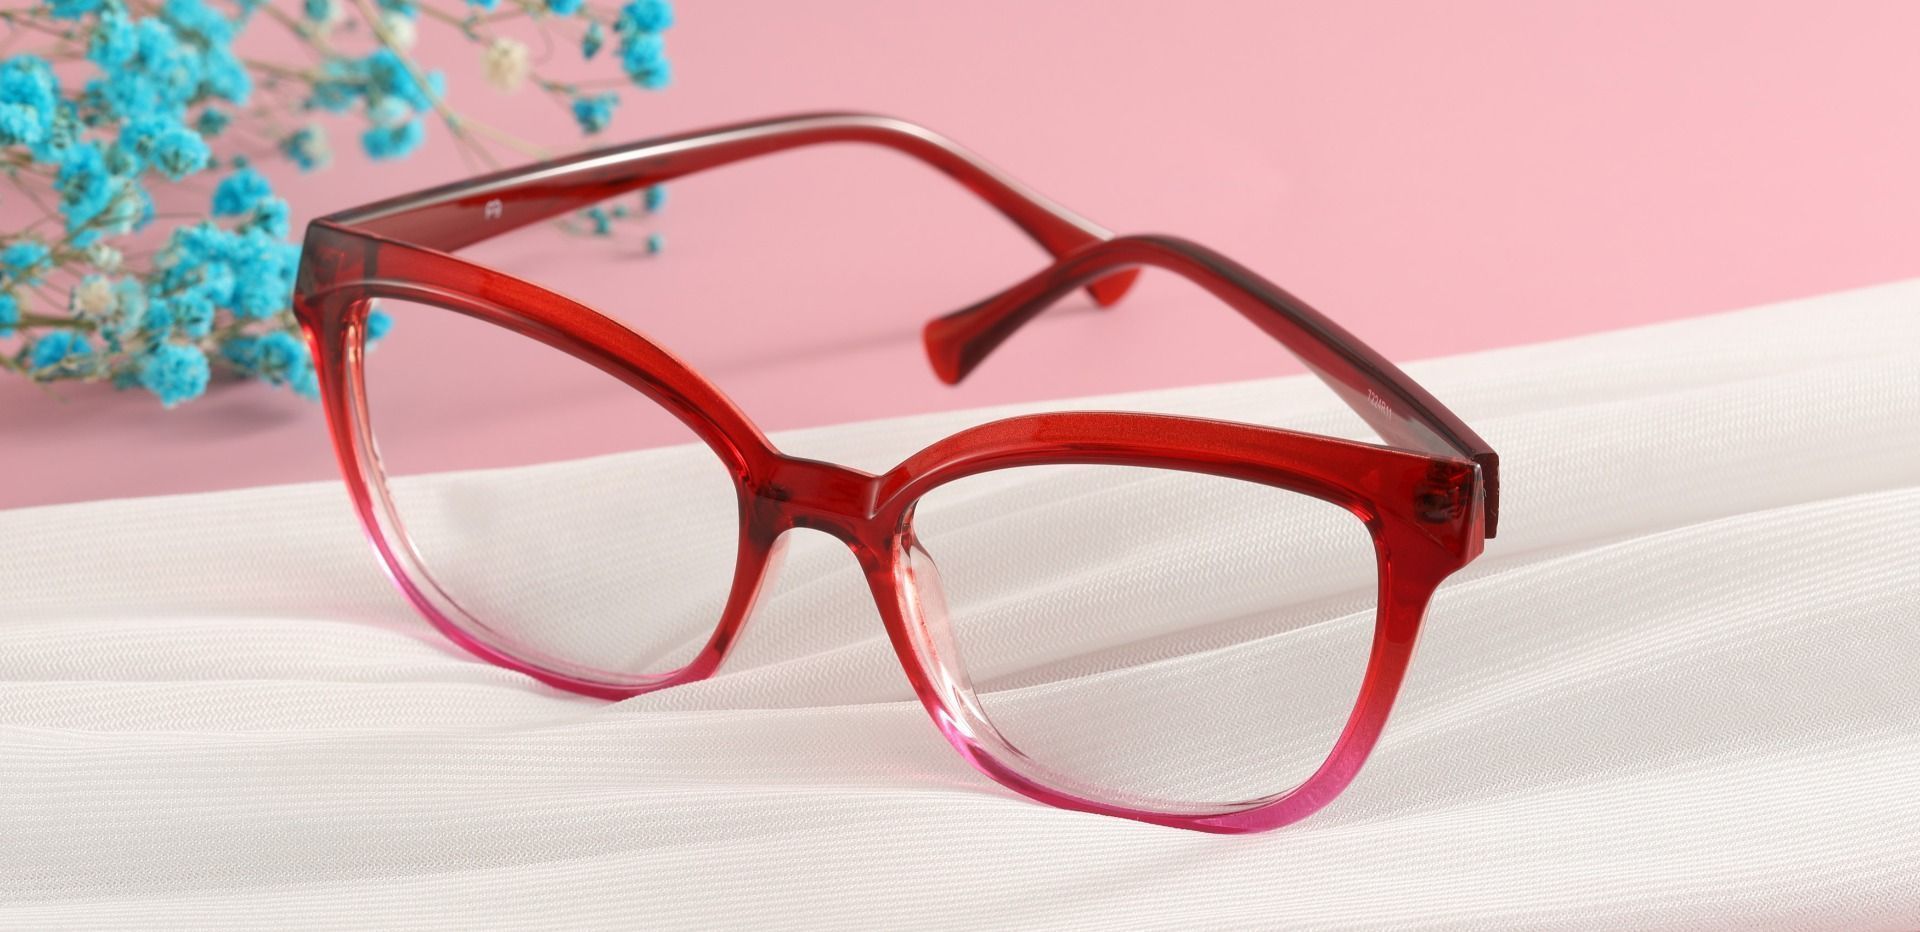 Nashville Cat Eye Prescription Glasses - Red